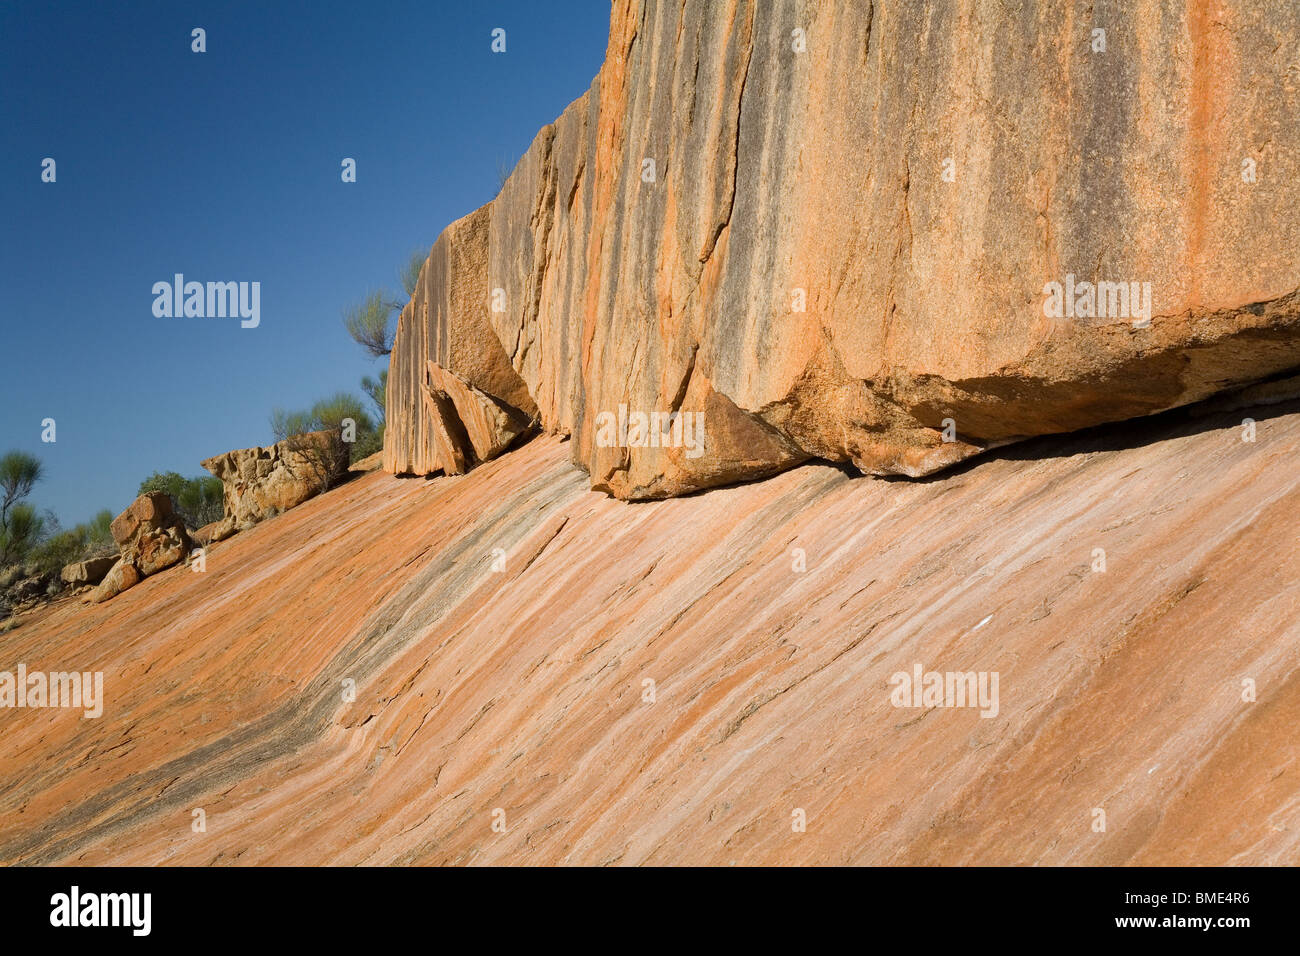 Wasser-Erosion-Muster & Textur auf eine Felswand Felsen Granit & Hang in der Western Australian outback Stockfoto